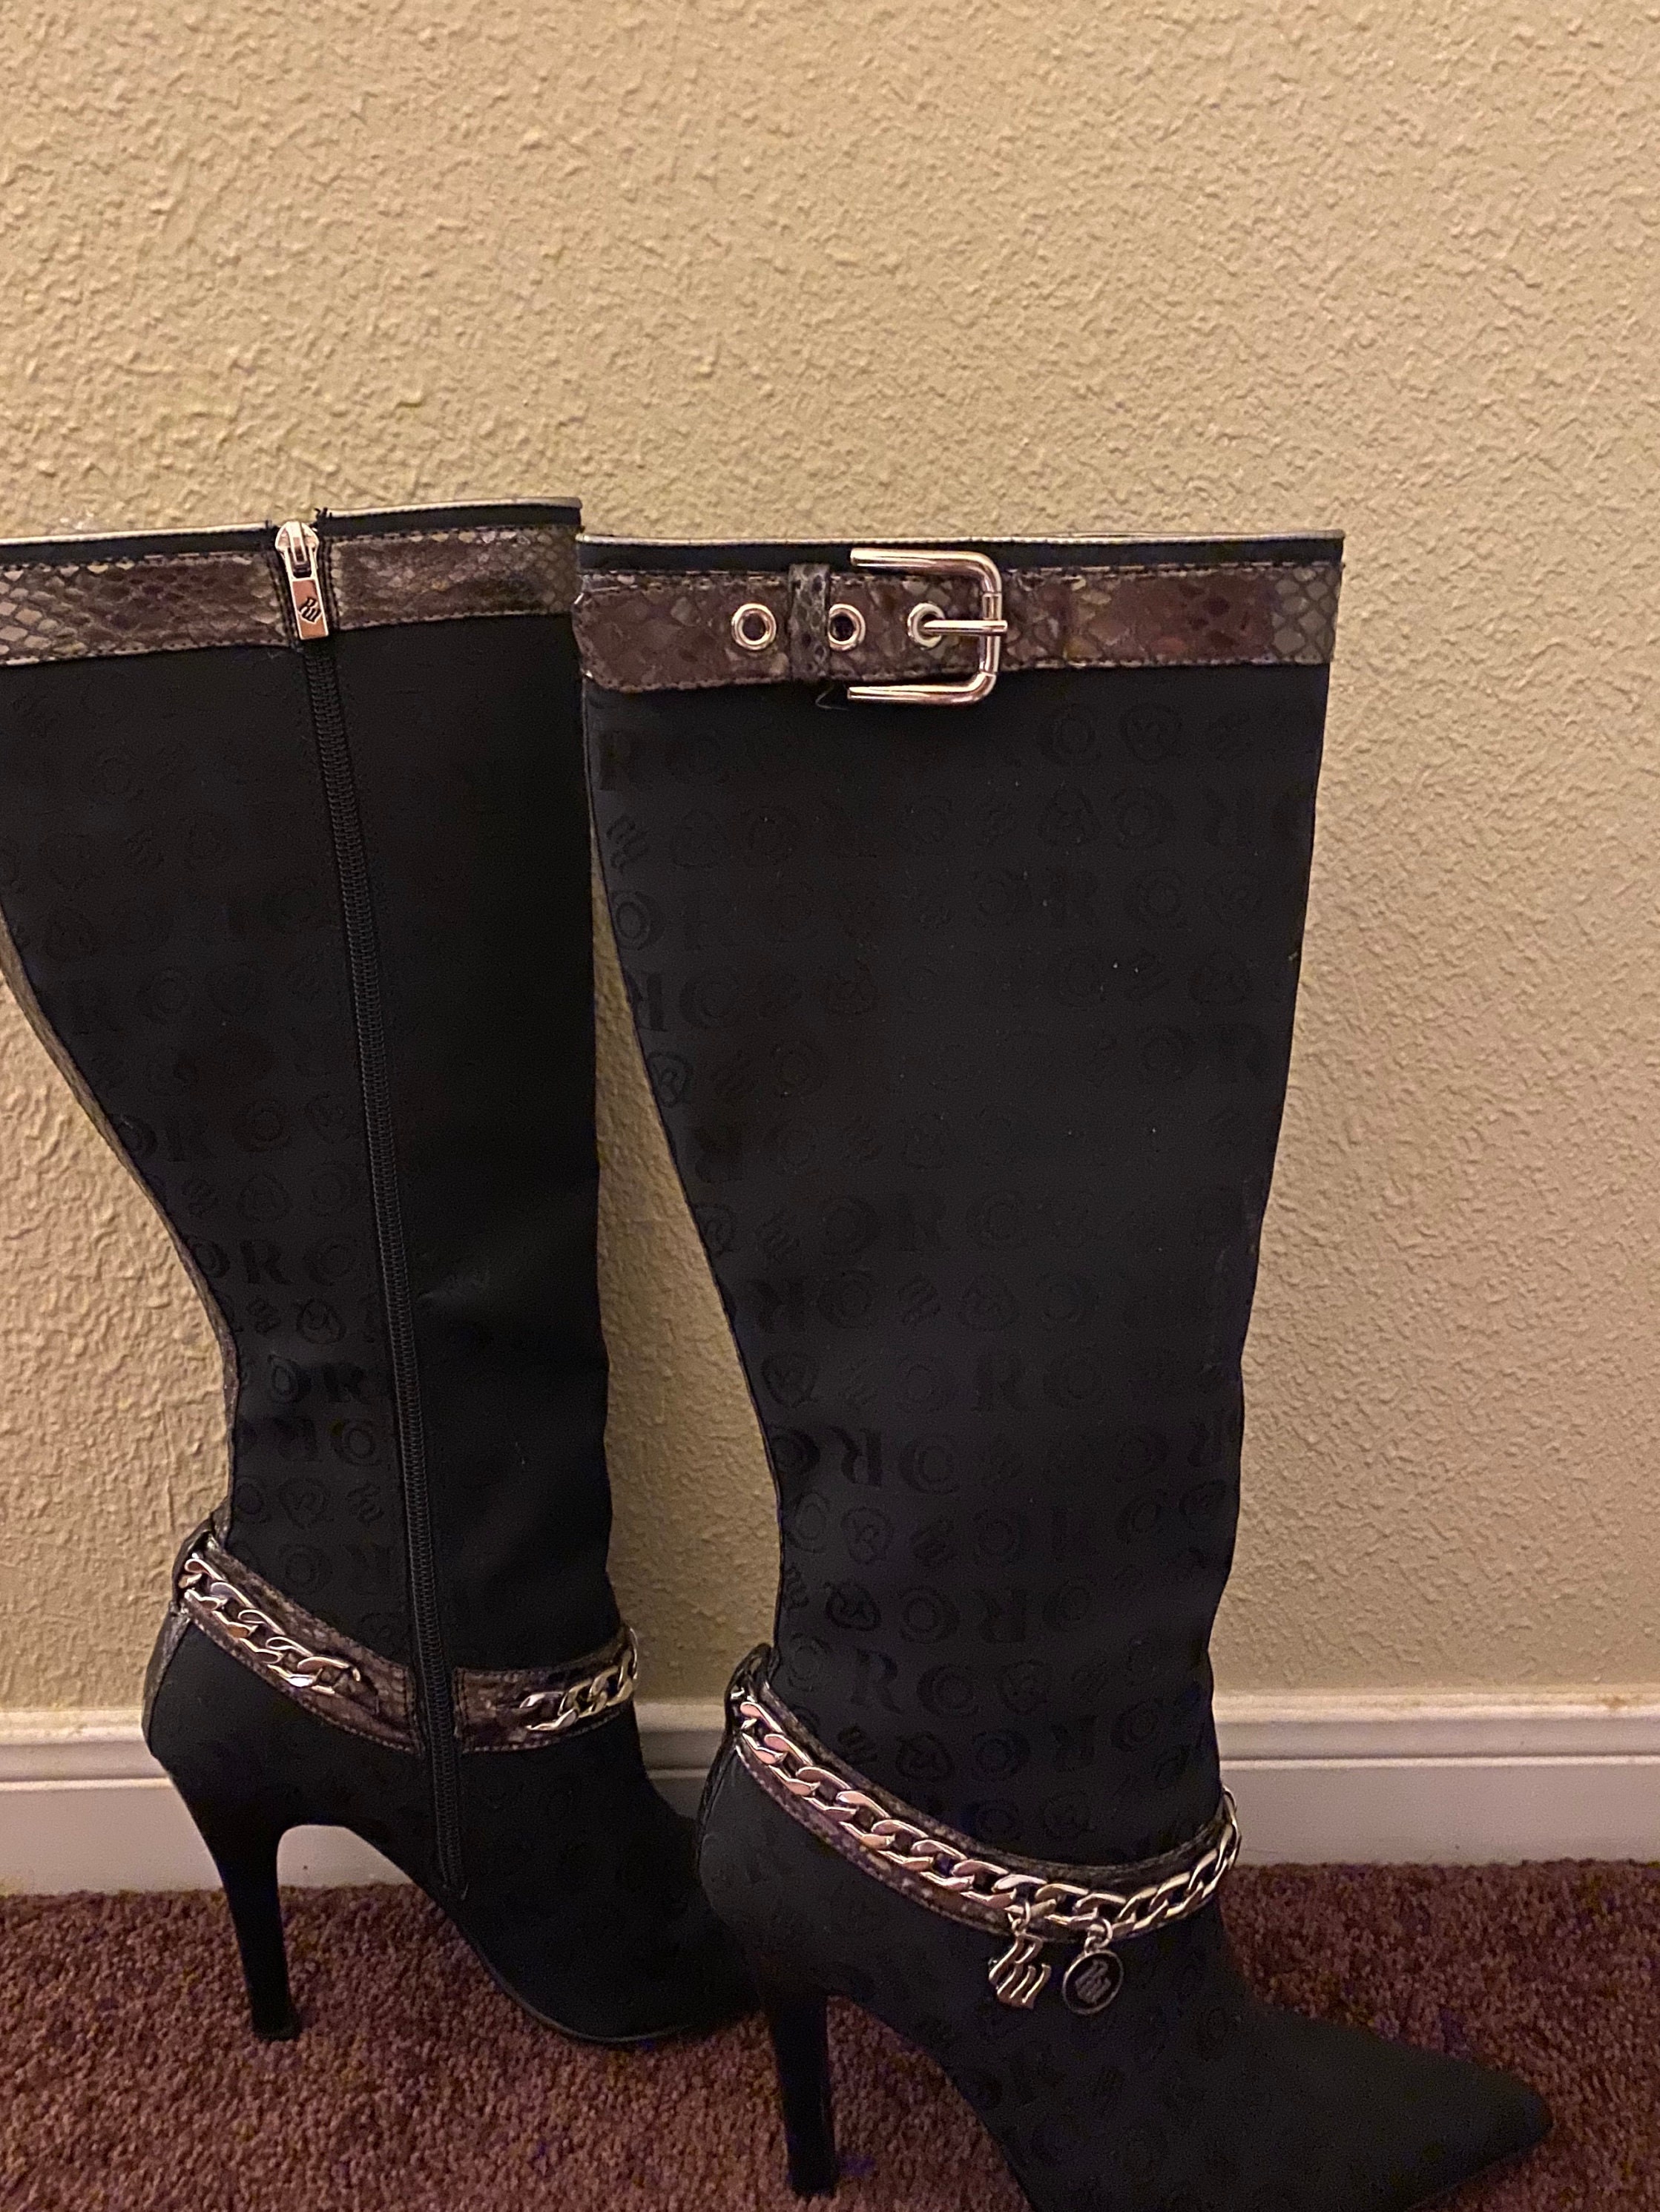 19 LV Lady Boots ideas  boots, louis vuitton shoes, louis vuitton boots